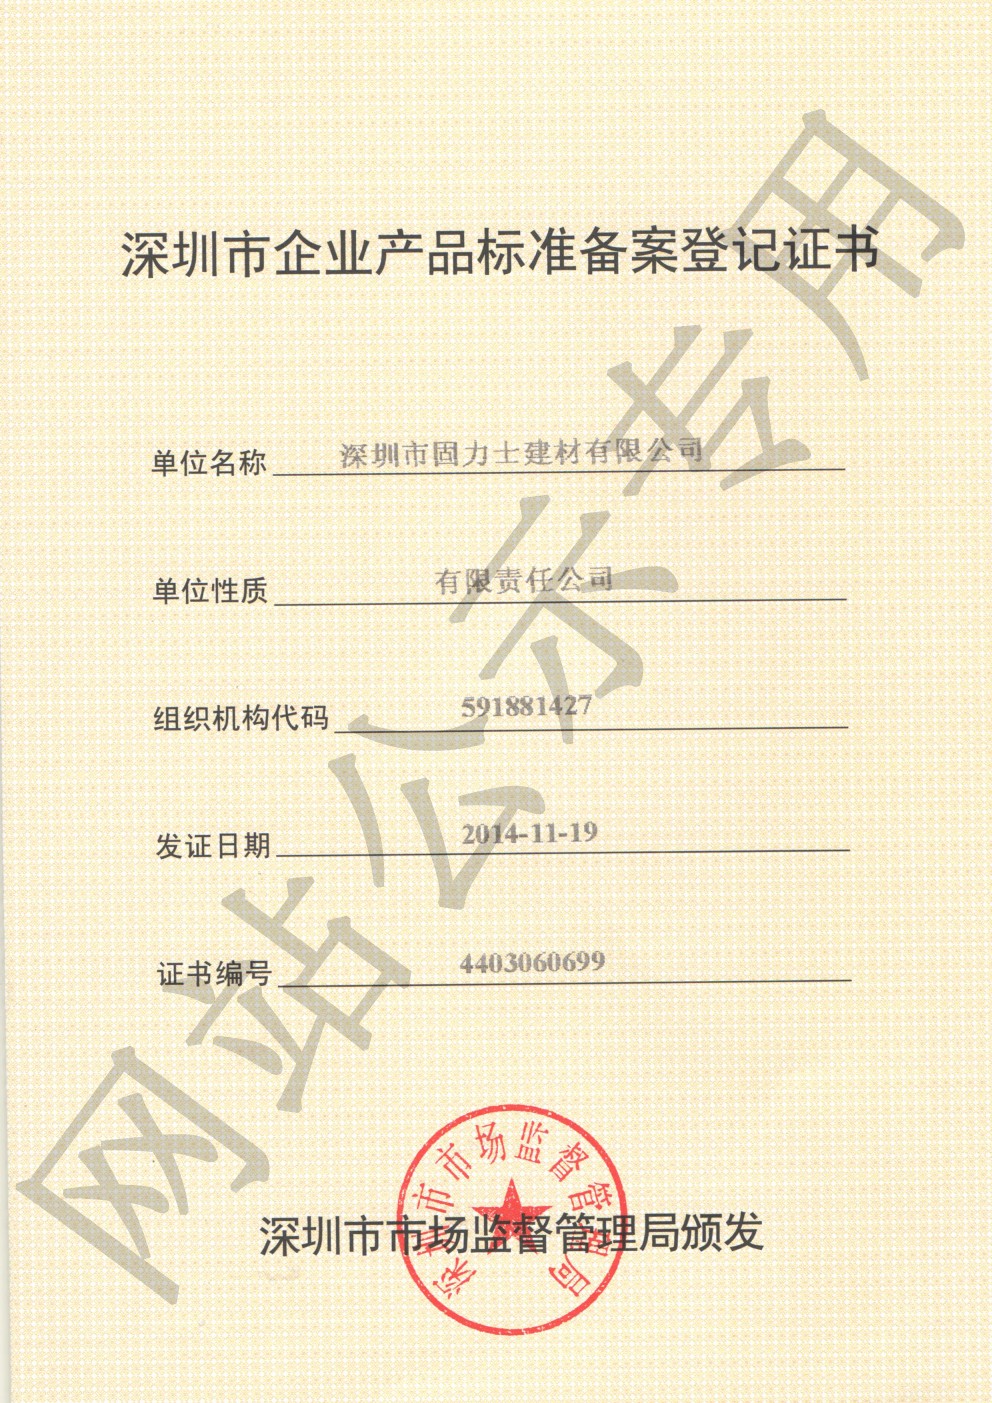 古浪企业产品标准登记证书